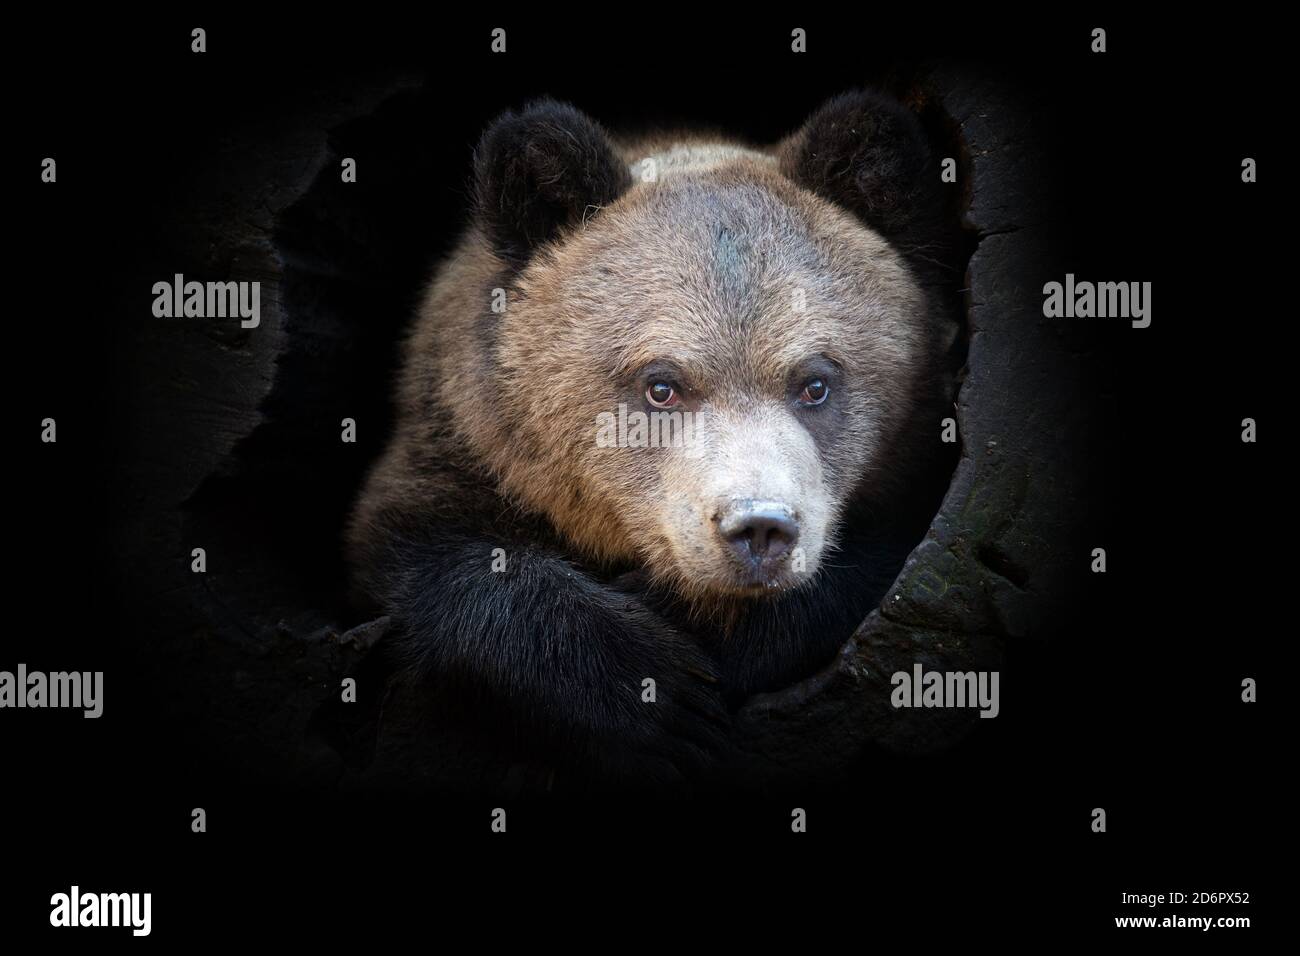 Vue rapprochée de l'ours. Animal sauvage isolé sur fond noir Banque D'Images